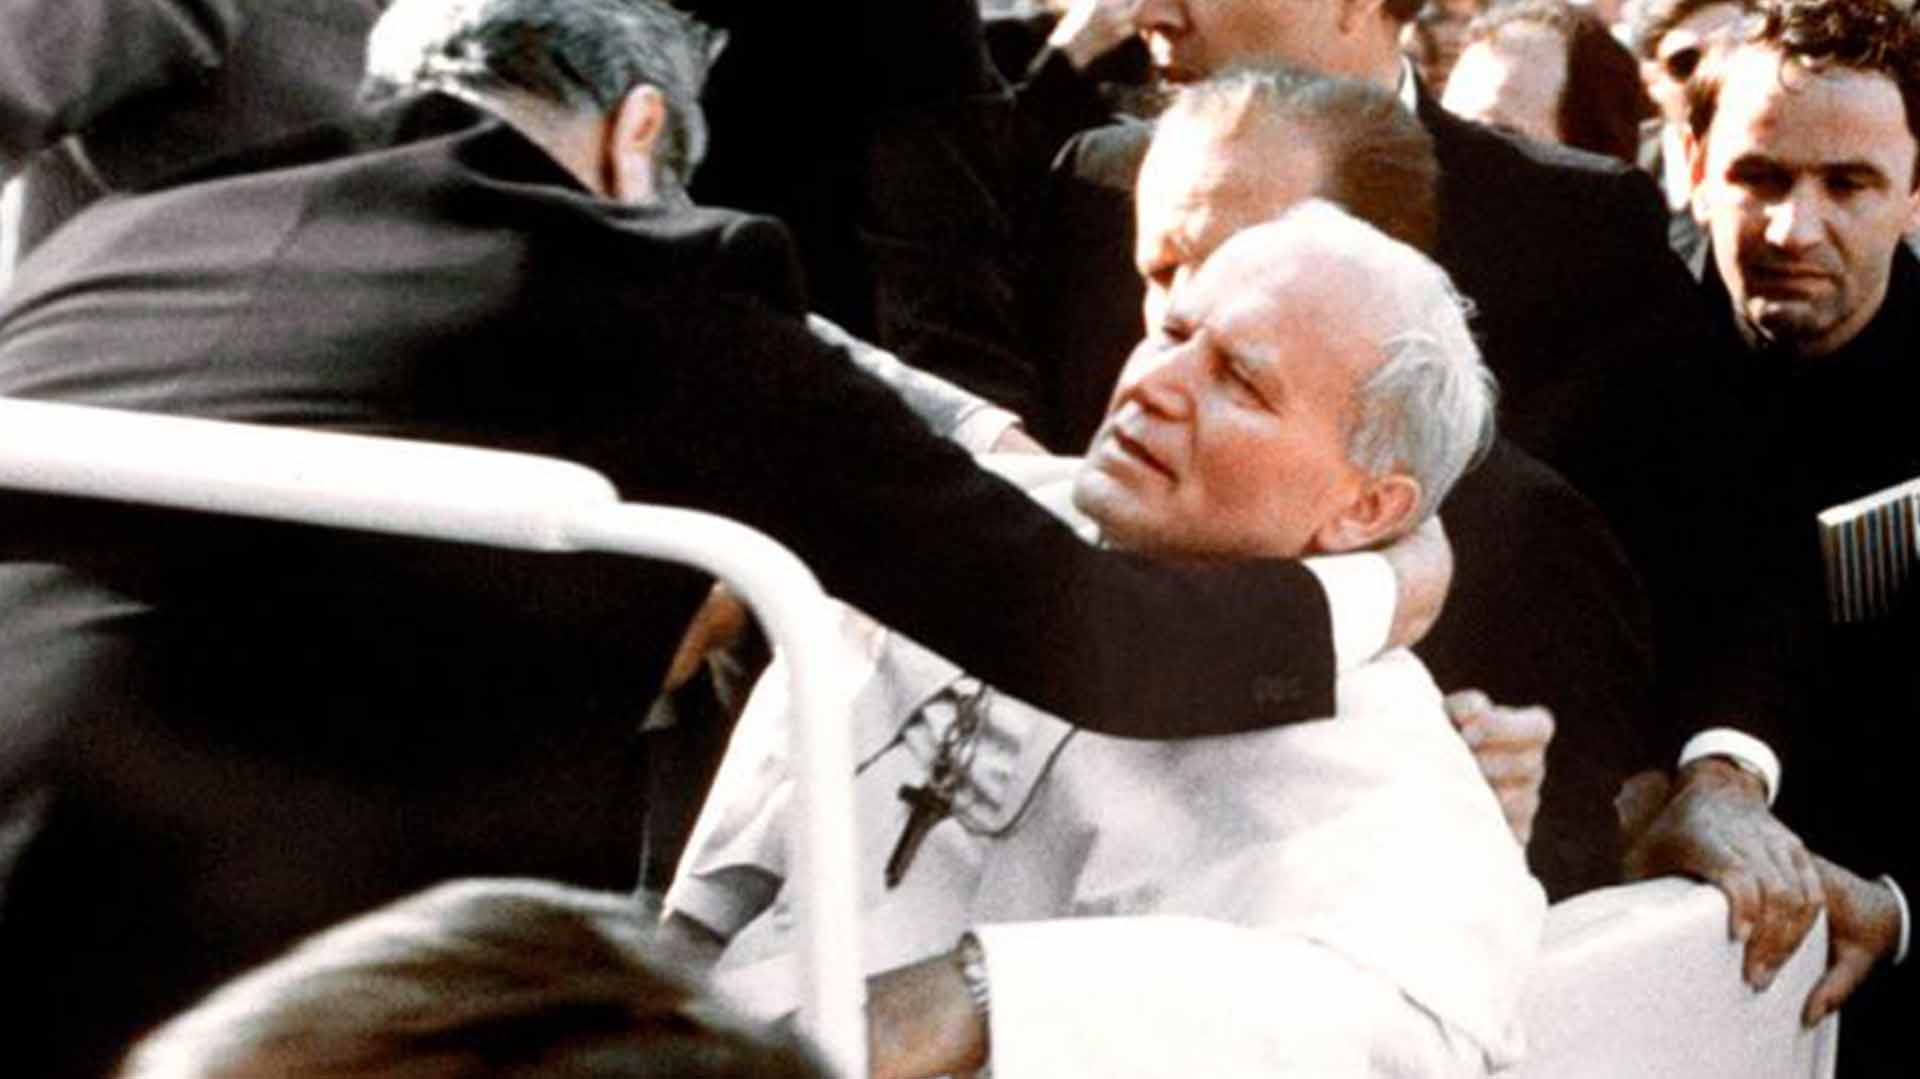 13 de mayo de 1981. Plaza de San Pedro. El papa Juan Pablo II acaba de recibir un balazo en el costado y se derrumba dentro del vehículo en el que paseaba entre la multitud